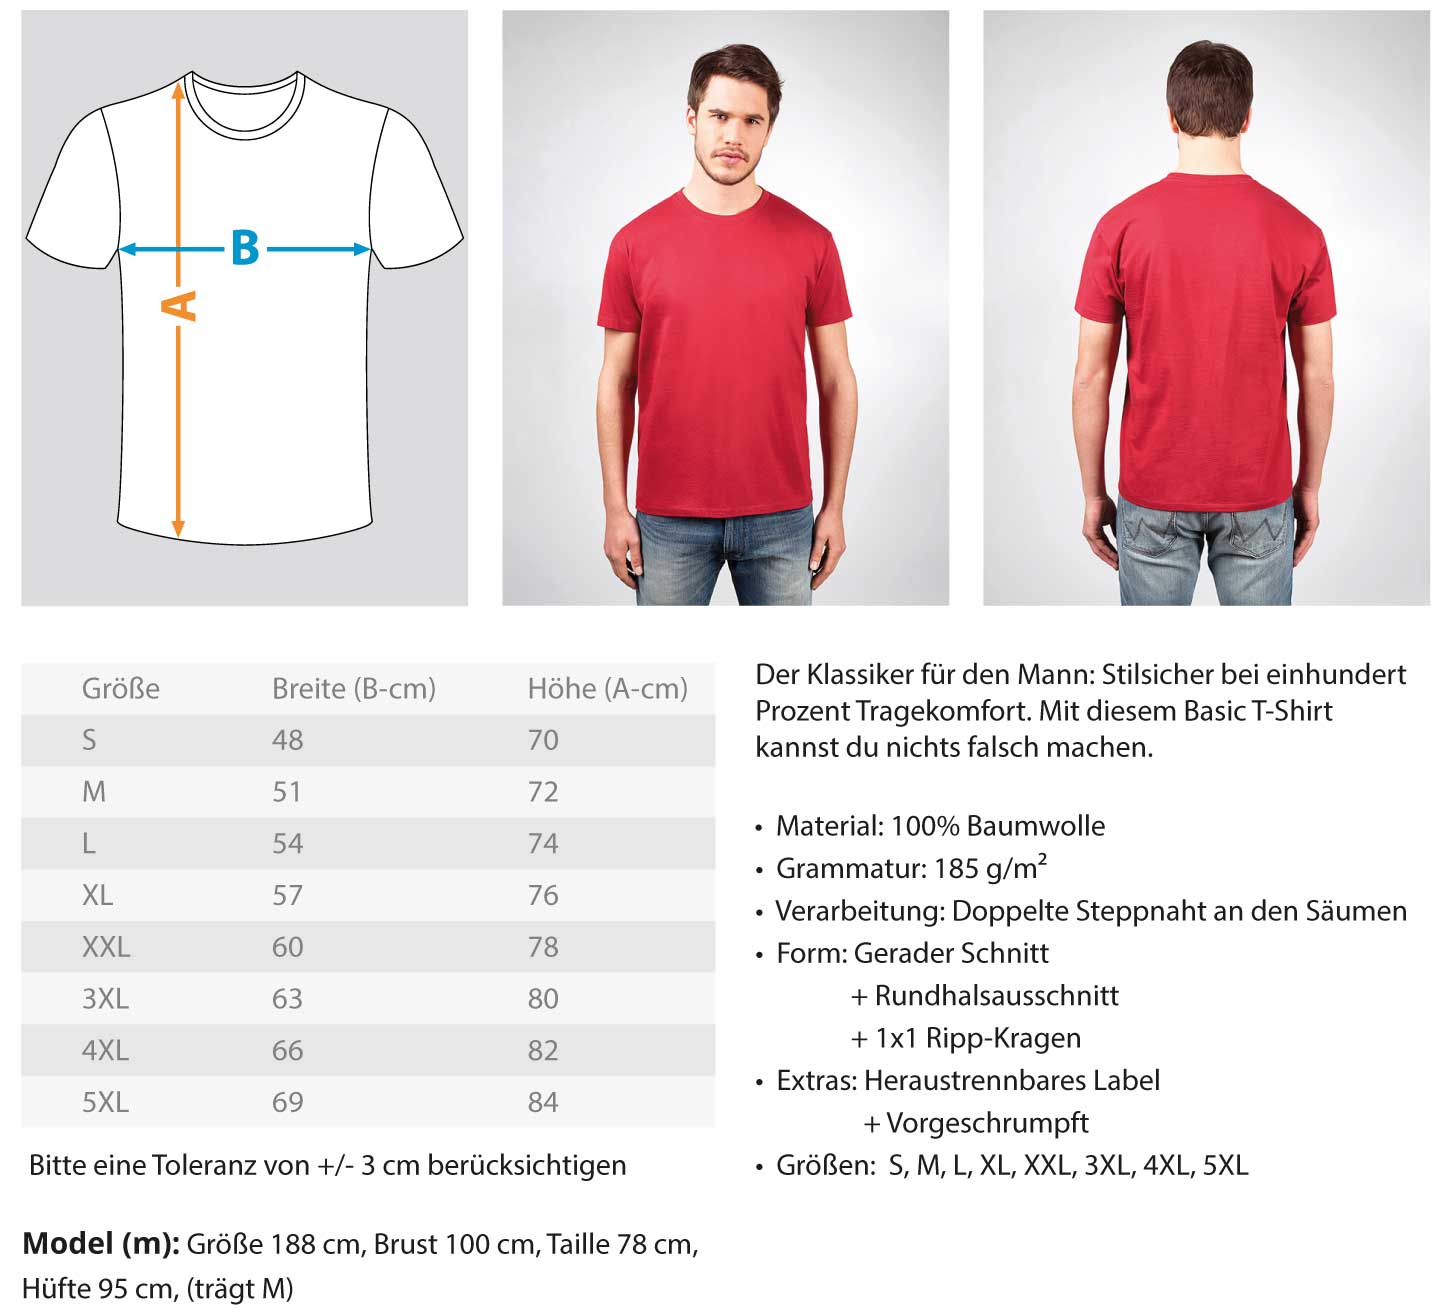 Betonbauer - Herren Shirt €24.95 Handwerkerfashion